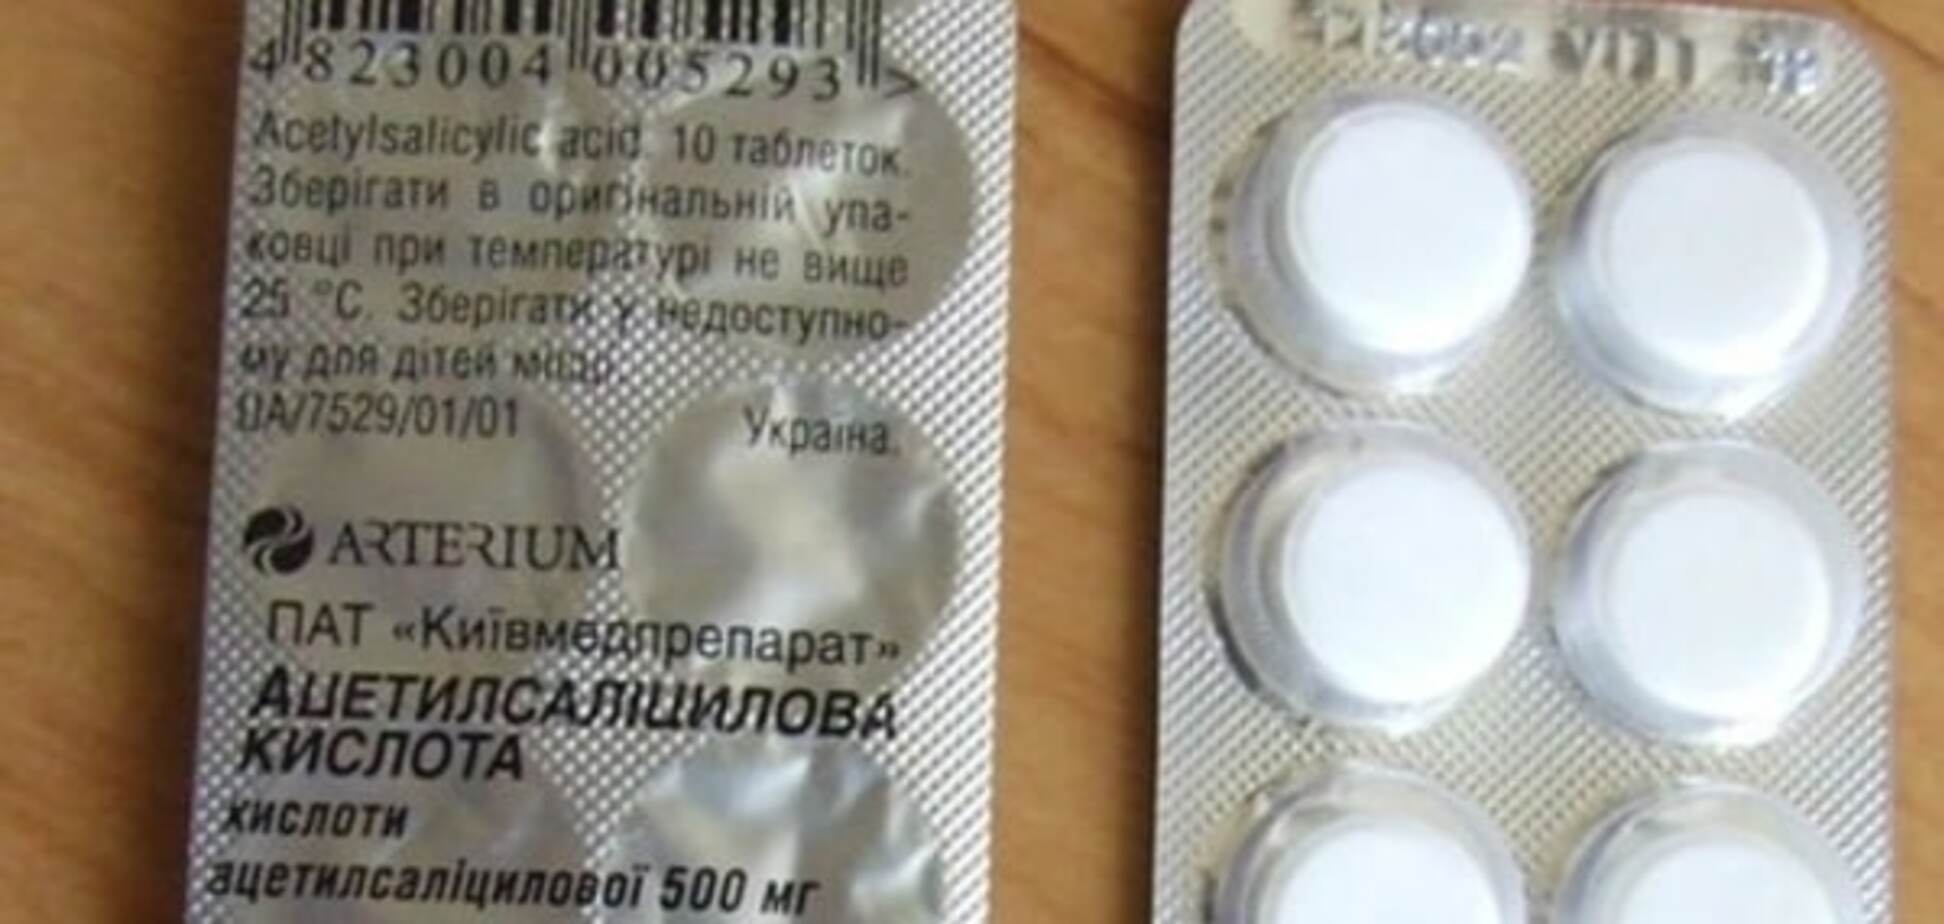 Производитель 'Аспирина' отверг обвинения в продаже 'ароматизированного мела'